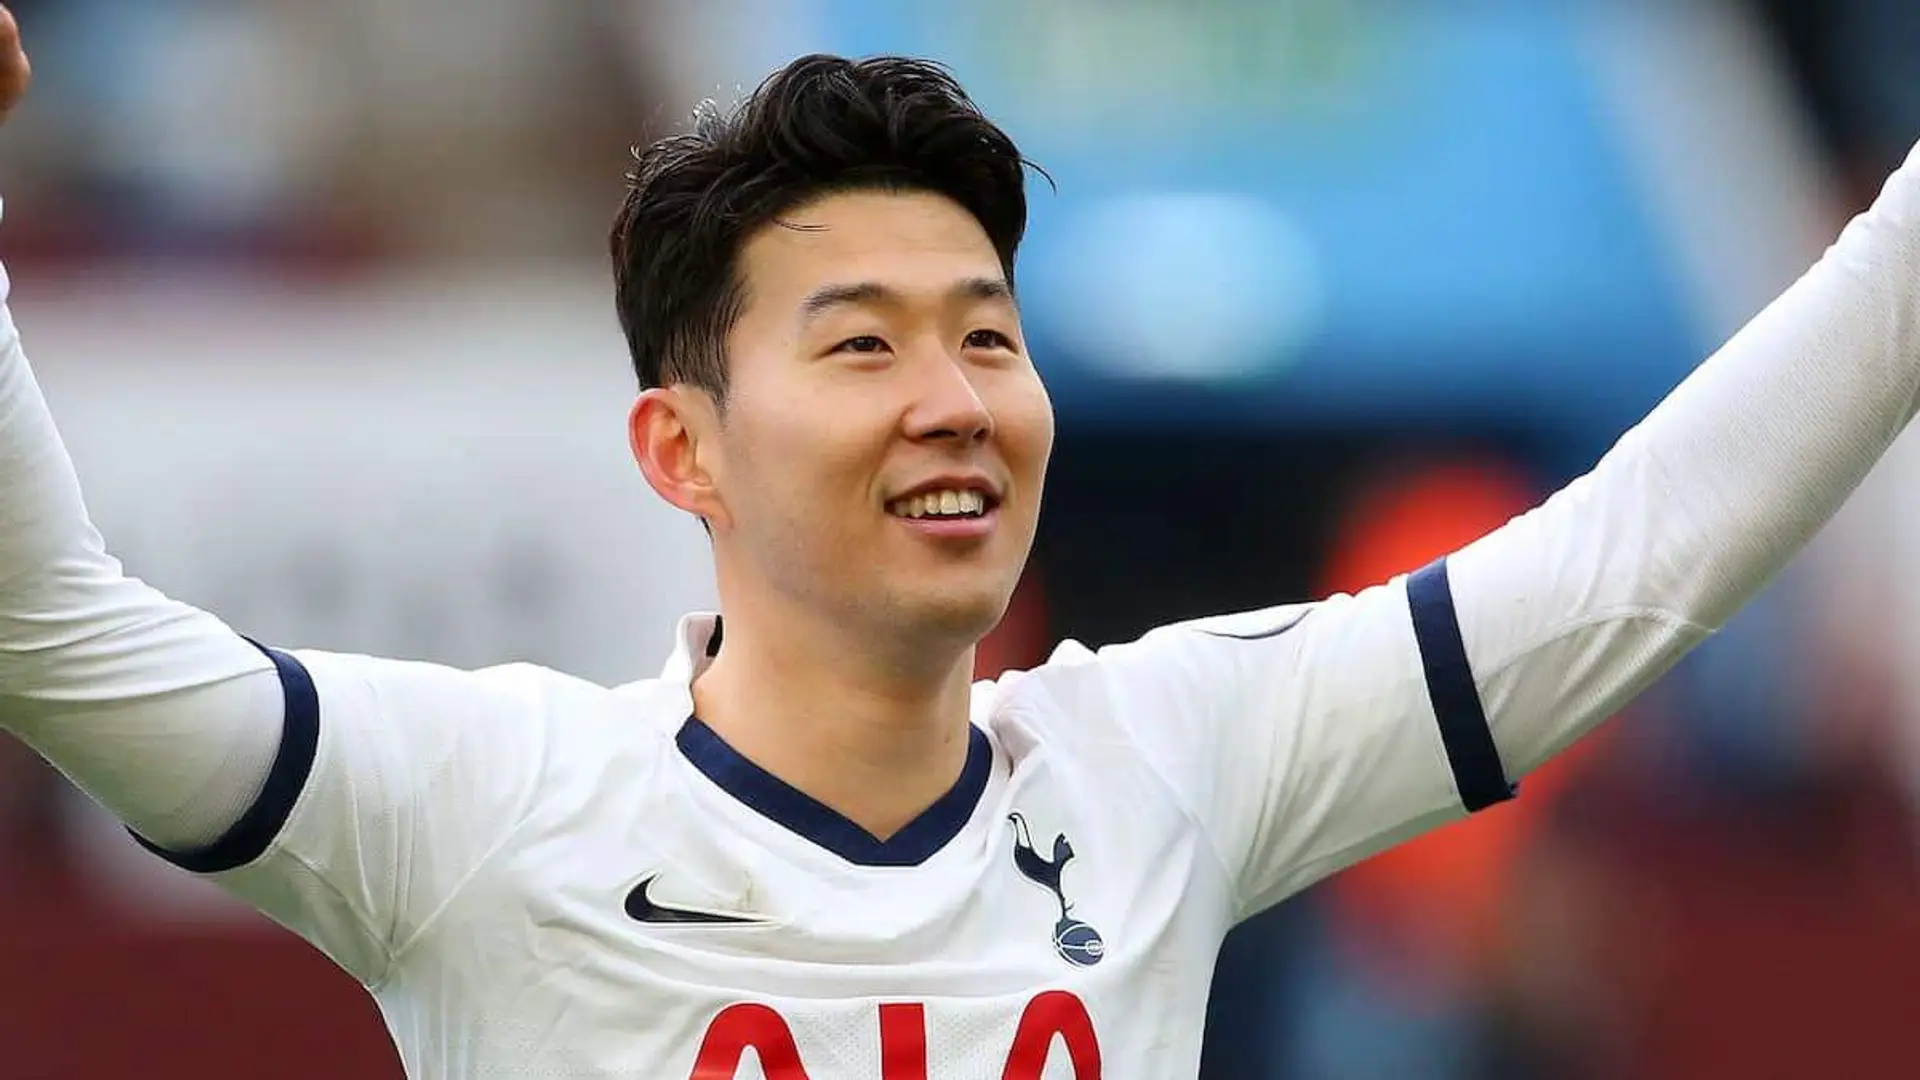 Le Real Madrid serait intéressé par Heung-min Son, évalué à 150M€ par Tottenham